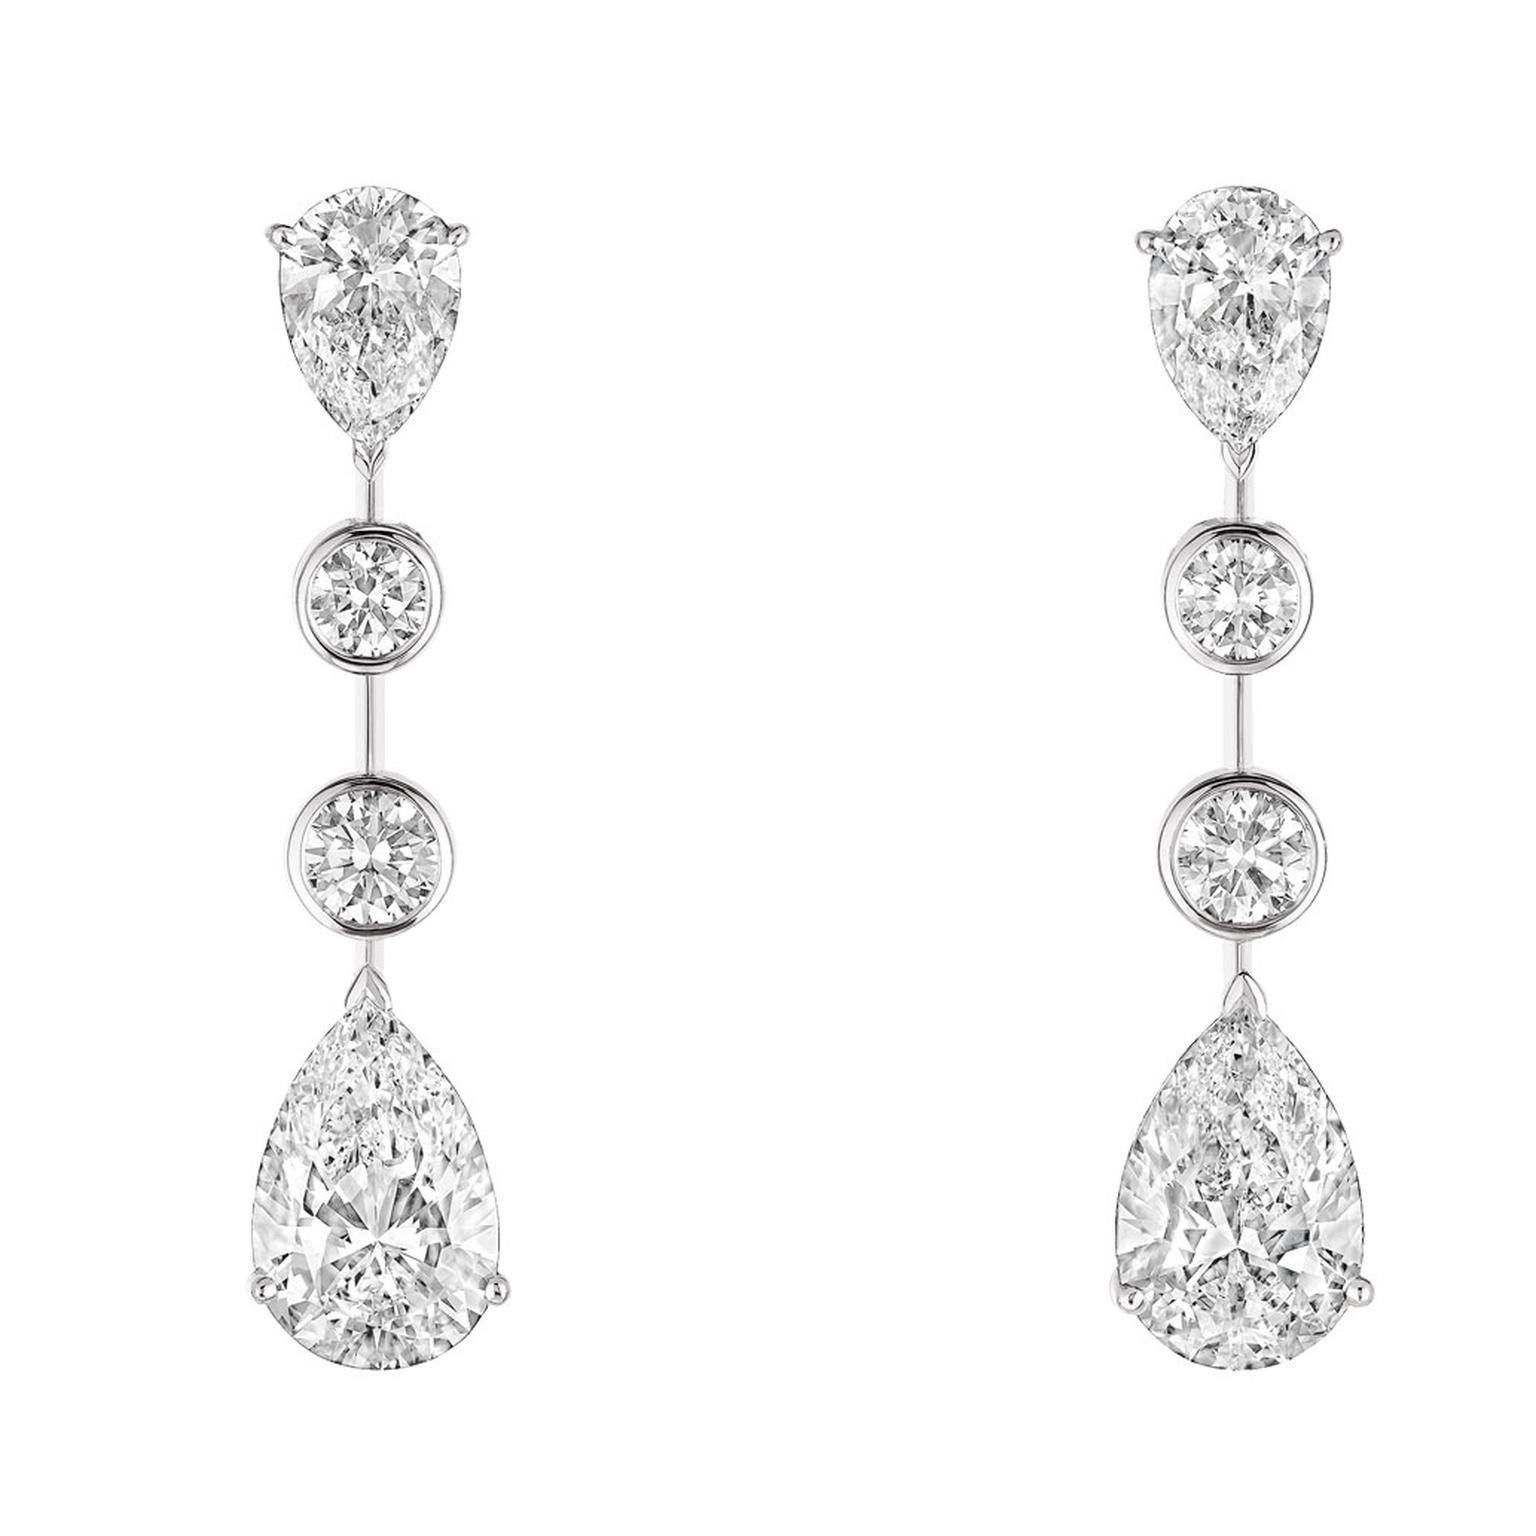 Chaumet splendour diamond earrings